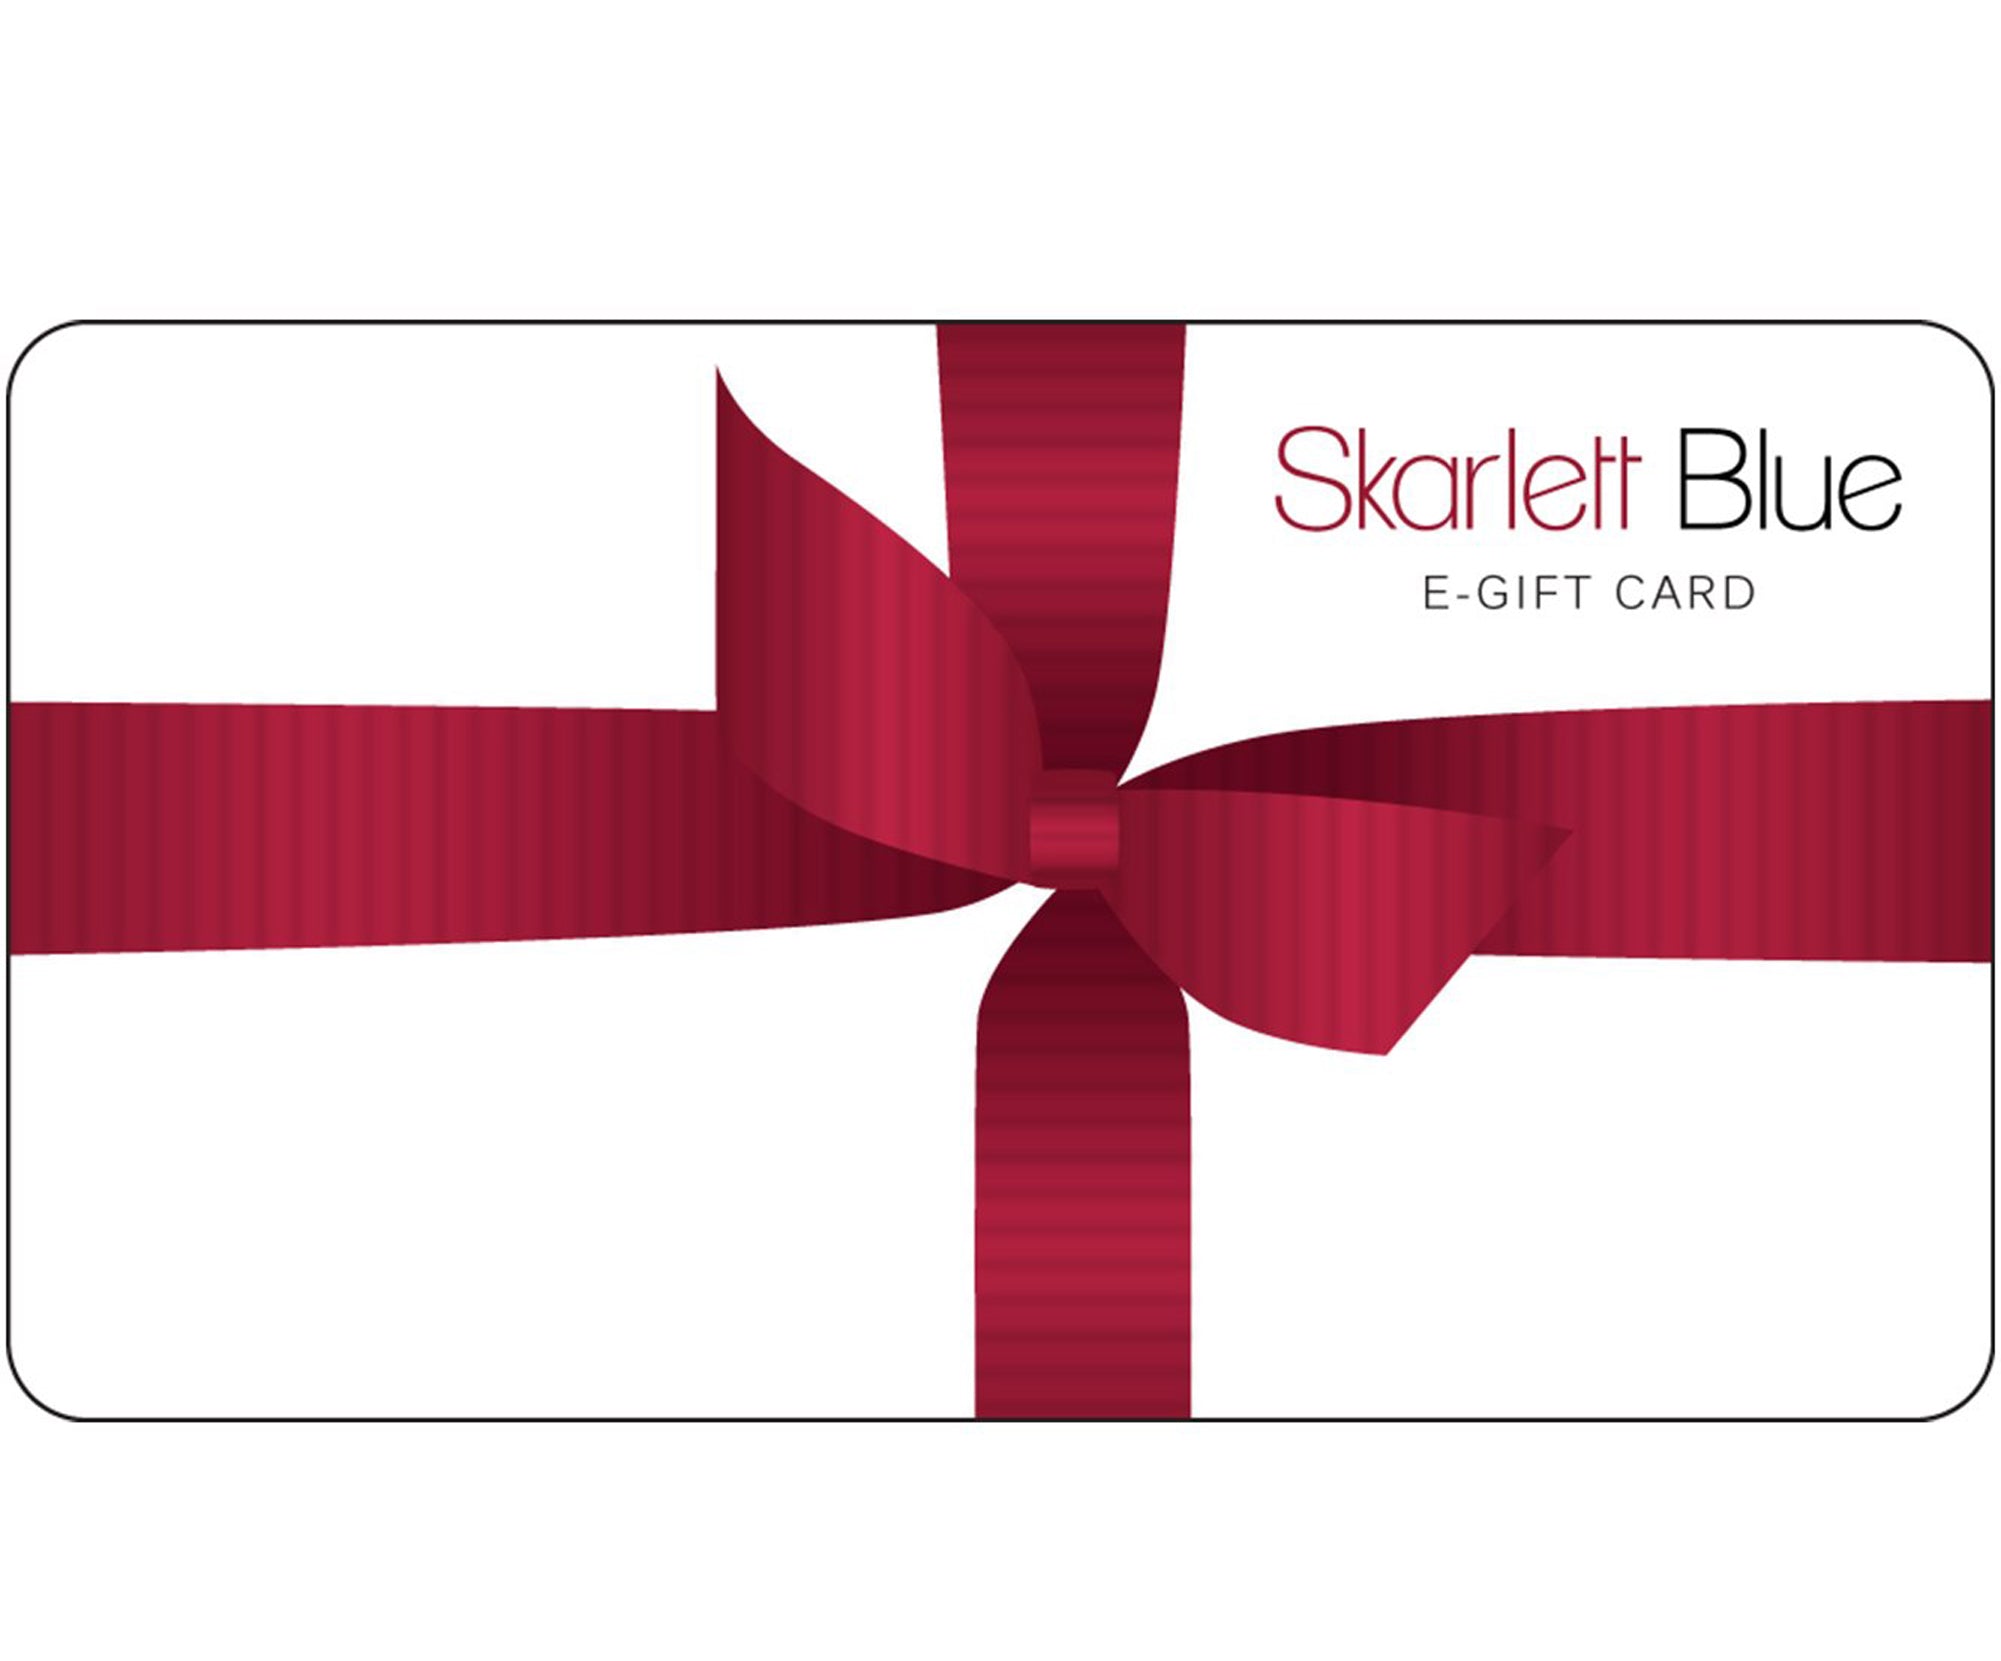 Skarlett Blue E-Gift Card